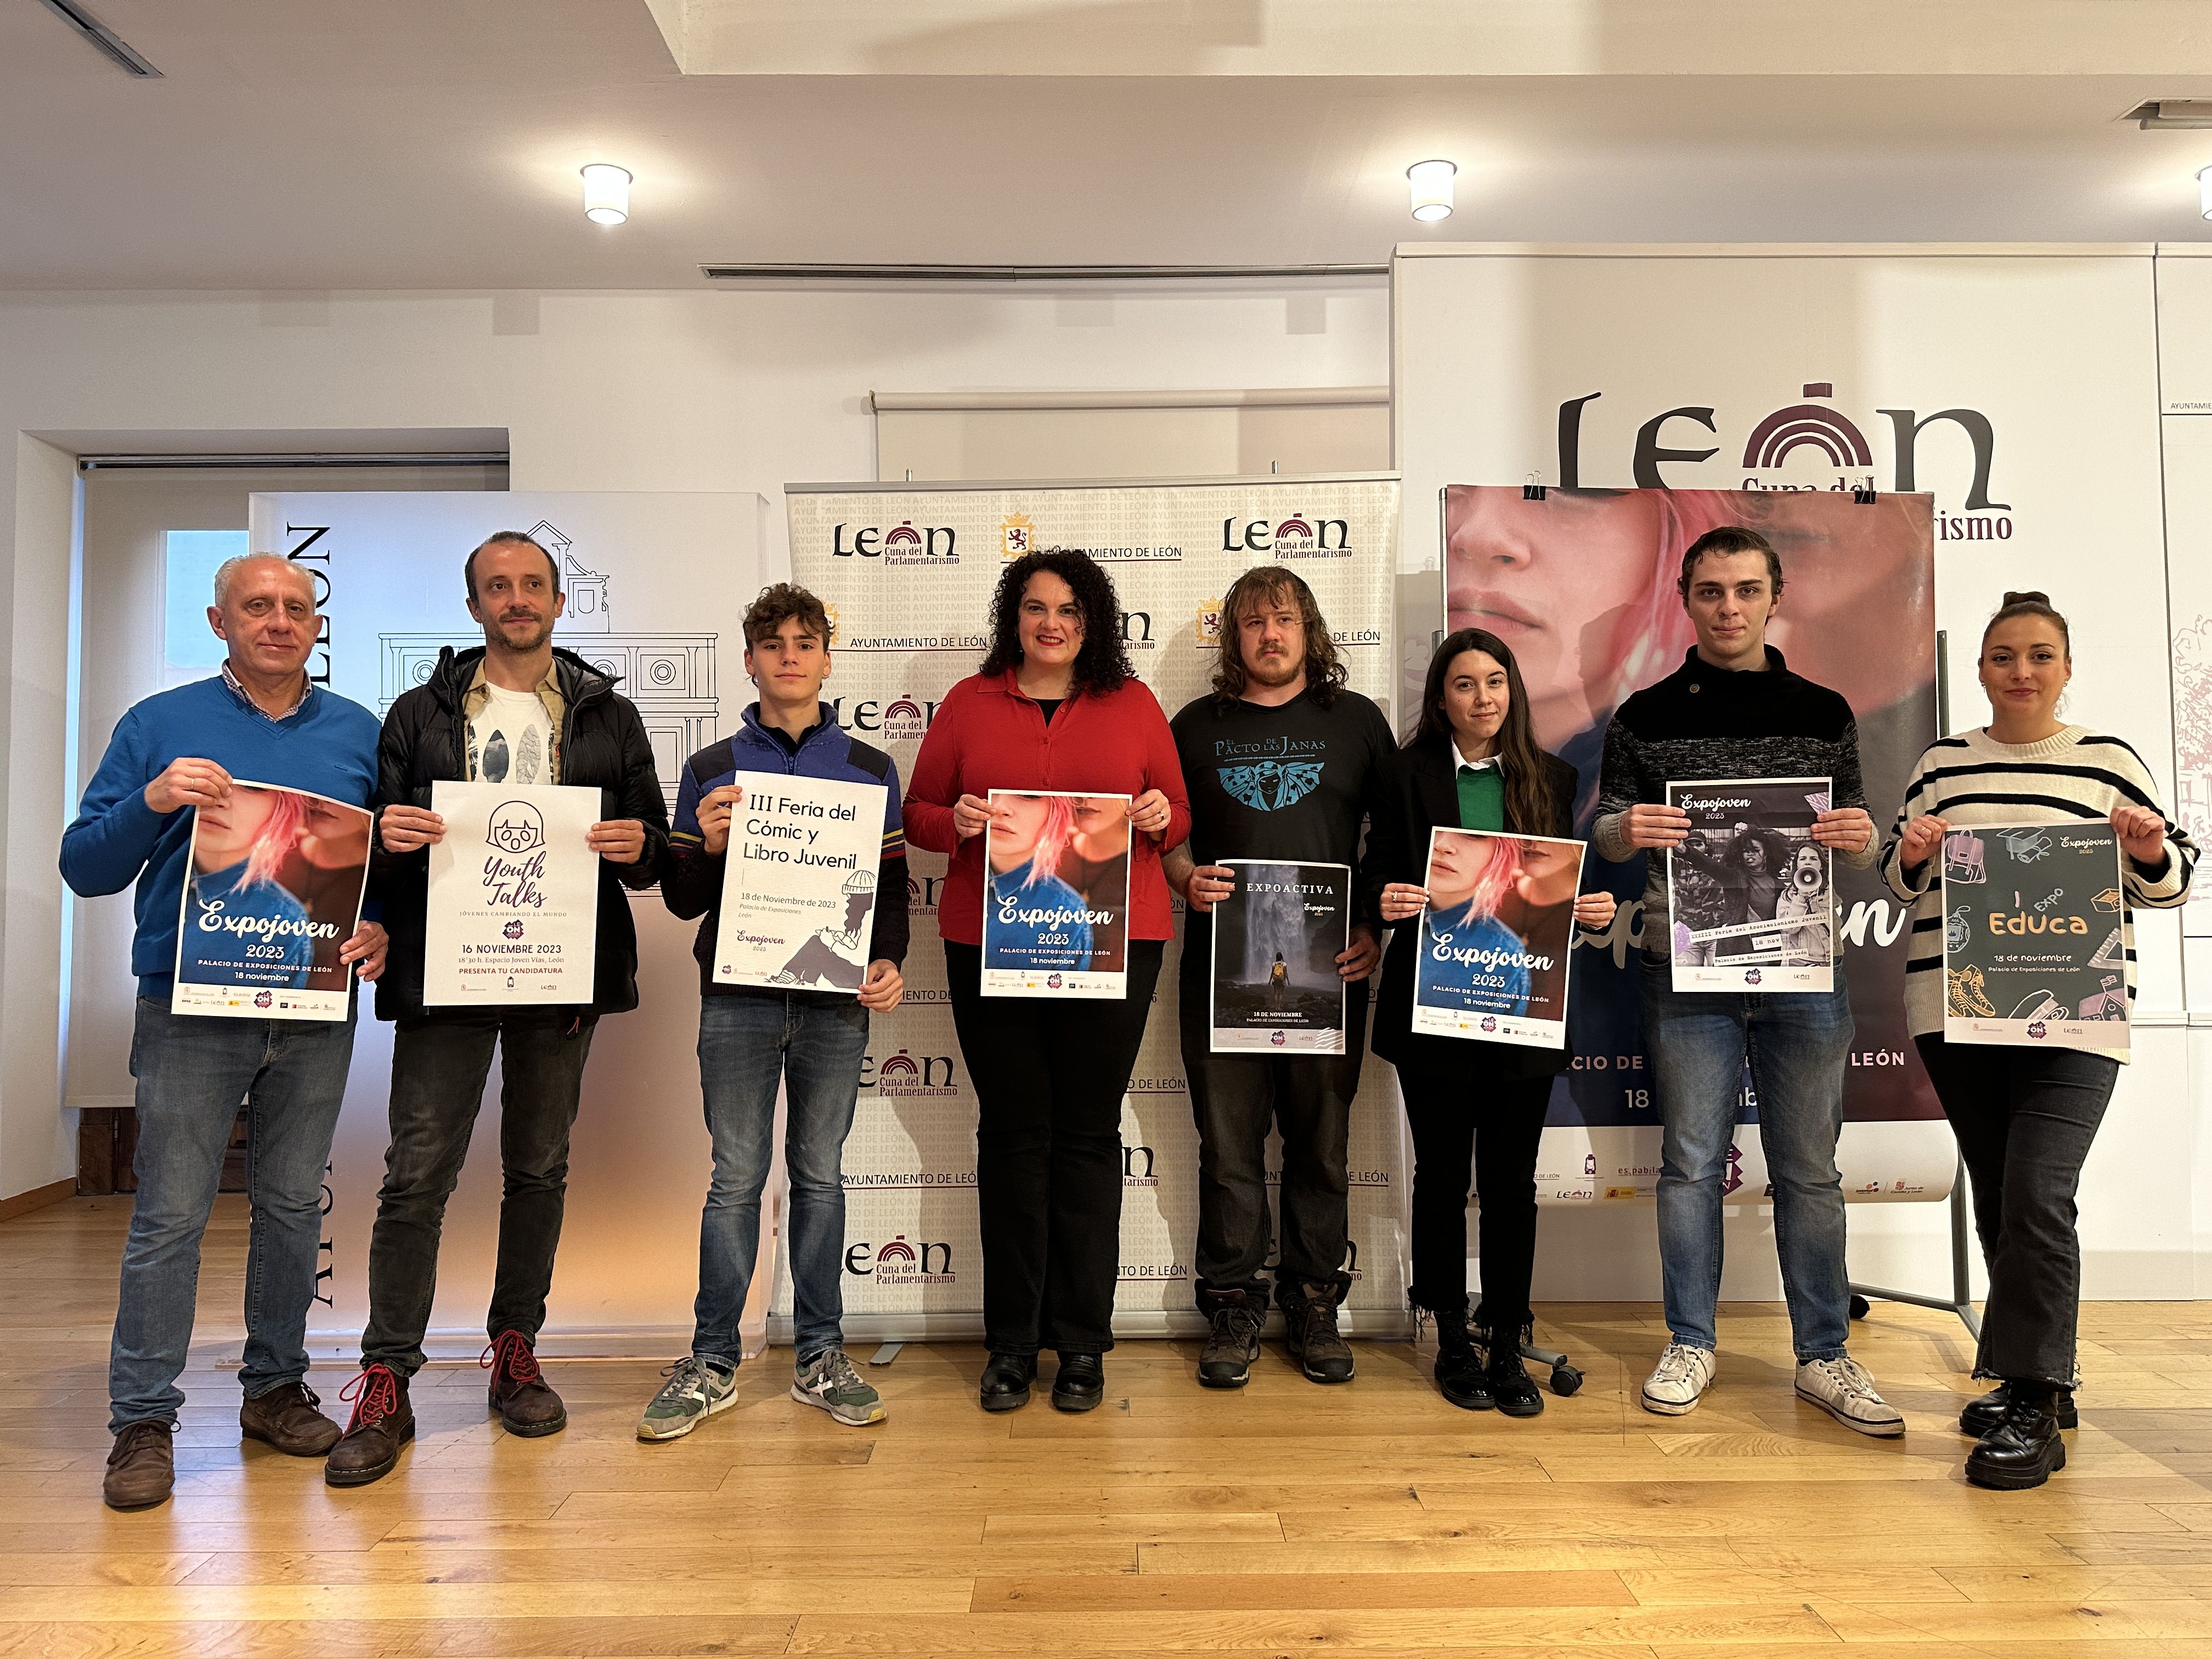 Presentación de la Expojoven en el Ayuntamiento de León, con la concejala de Juventud, Vera López, y miembros de las asociaciones. | L.N.C.